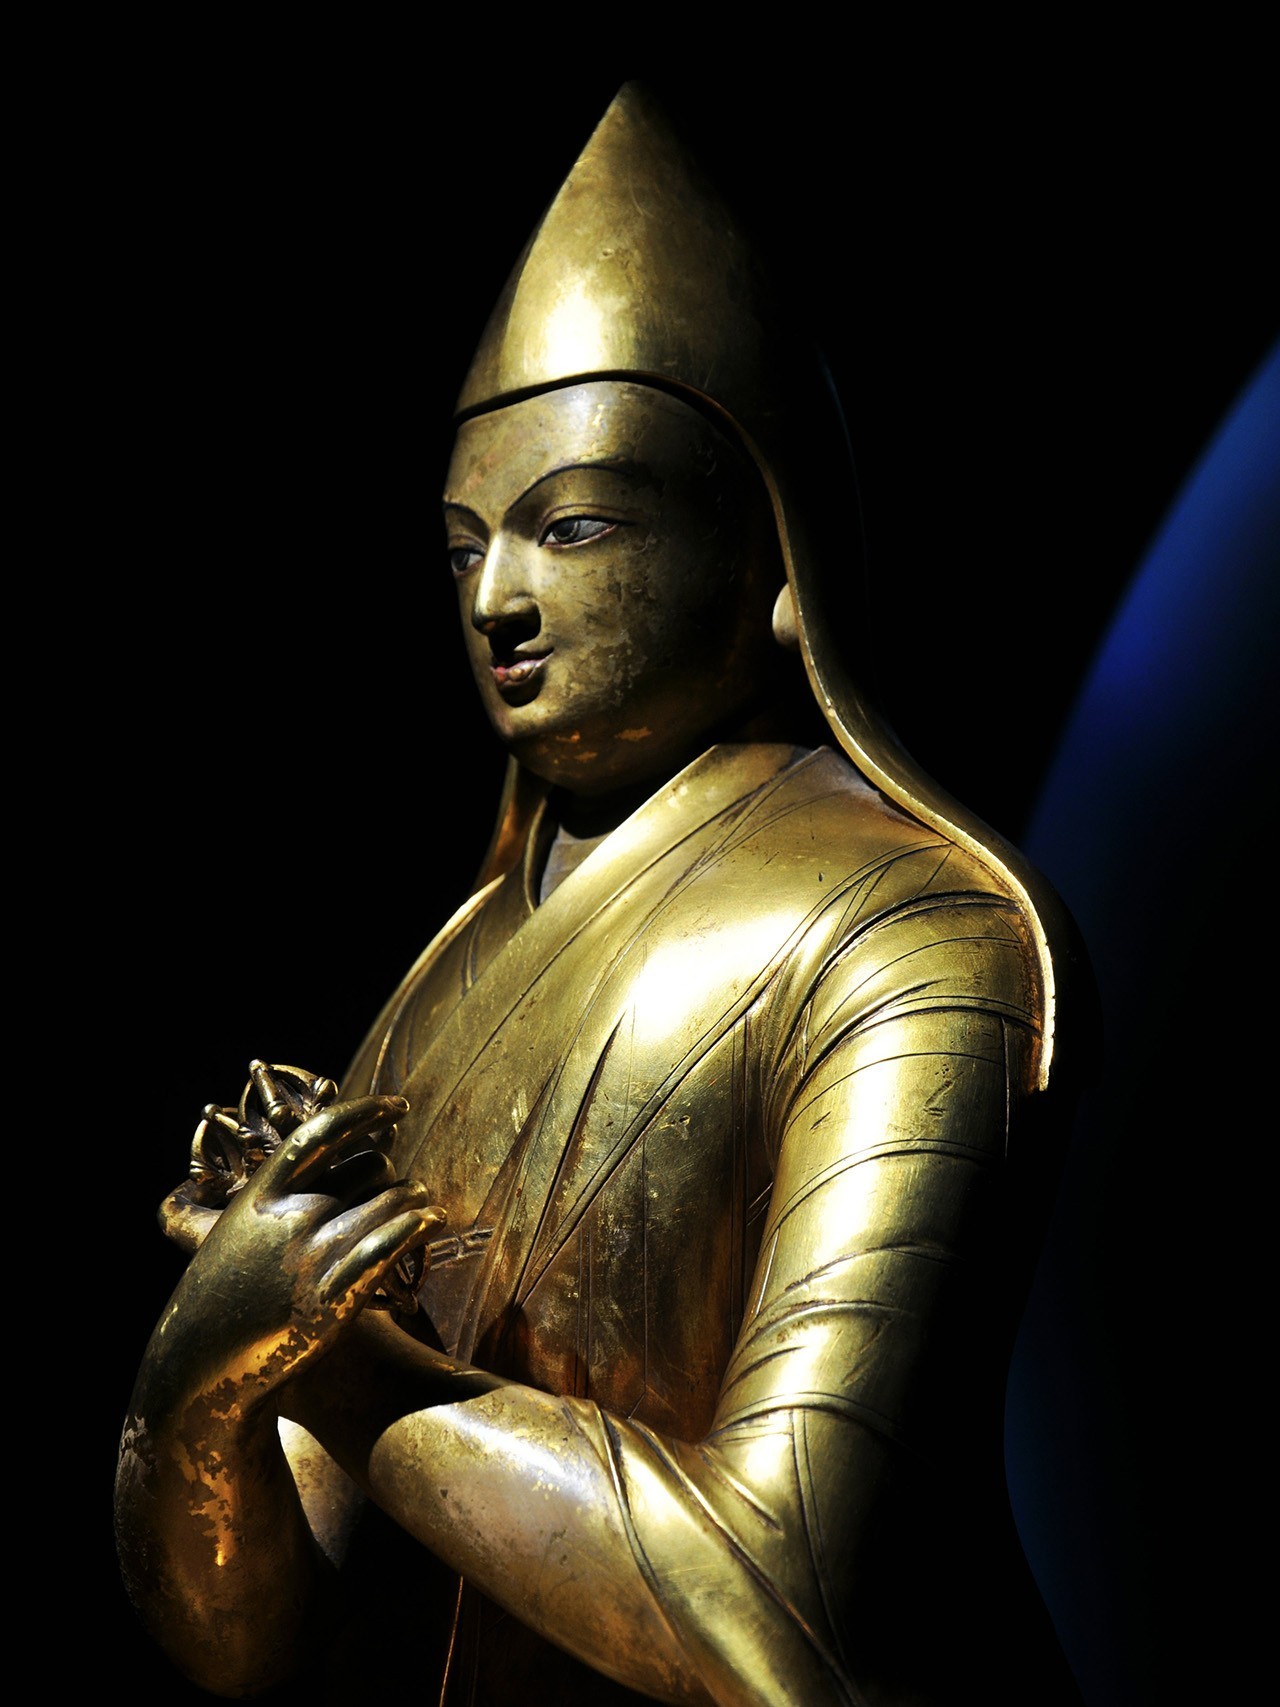 【喜雅艺术】 390万欧元落槌!稀有17世纪晚期铜鎏金蒙古扎纳巴扎尔风